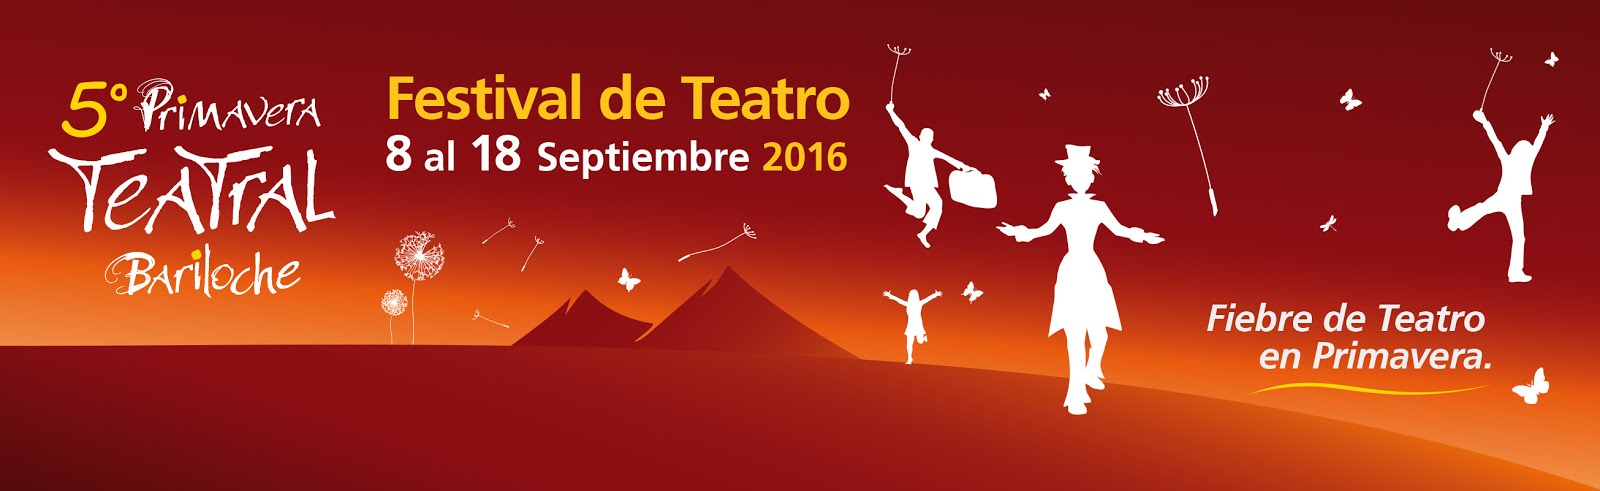 Primavera Teatral Bariloche 2016